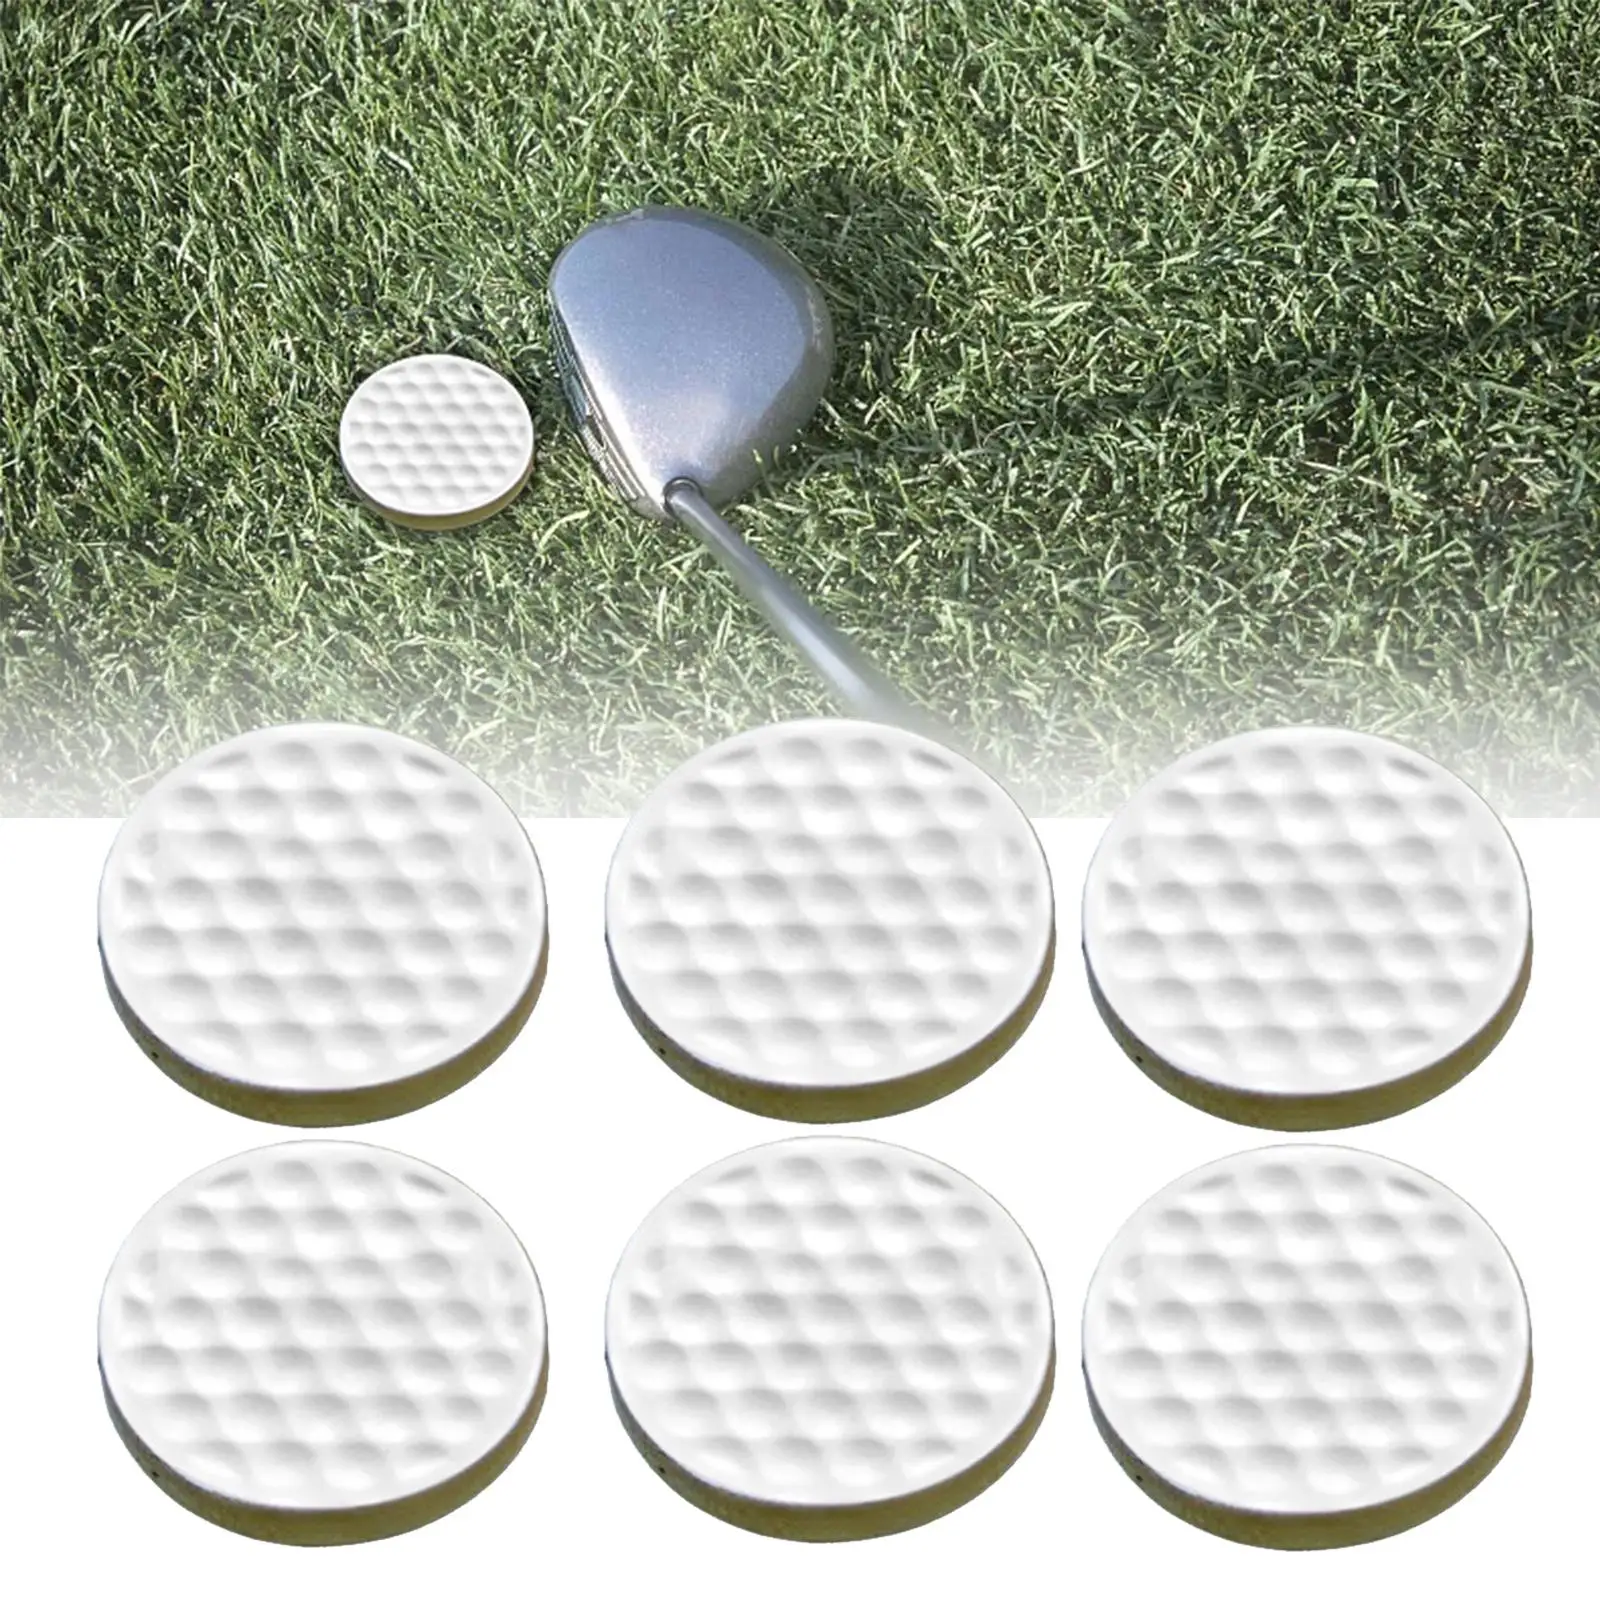 6Pcs Golf Practice Balls Golf Training Balls for Indoor Outdoor Swing Practice Yard Golfer Gift Men Women